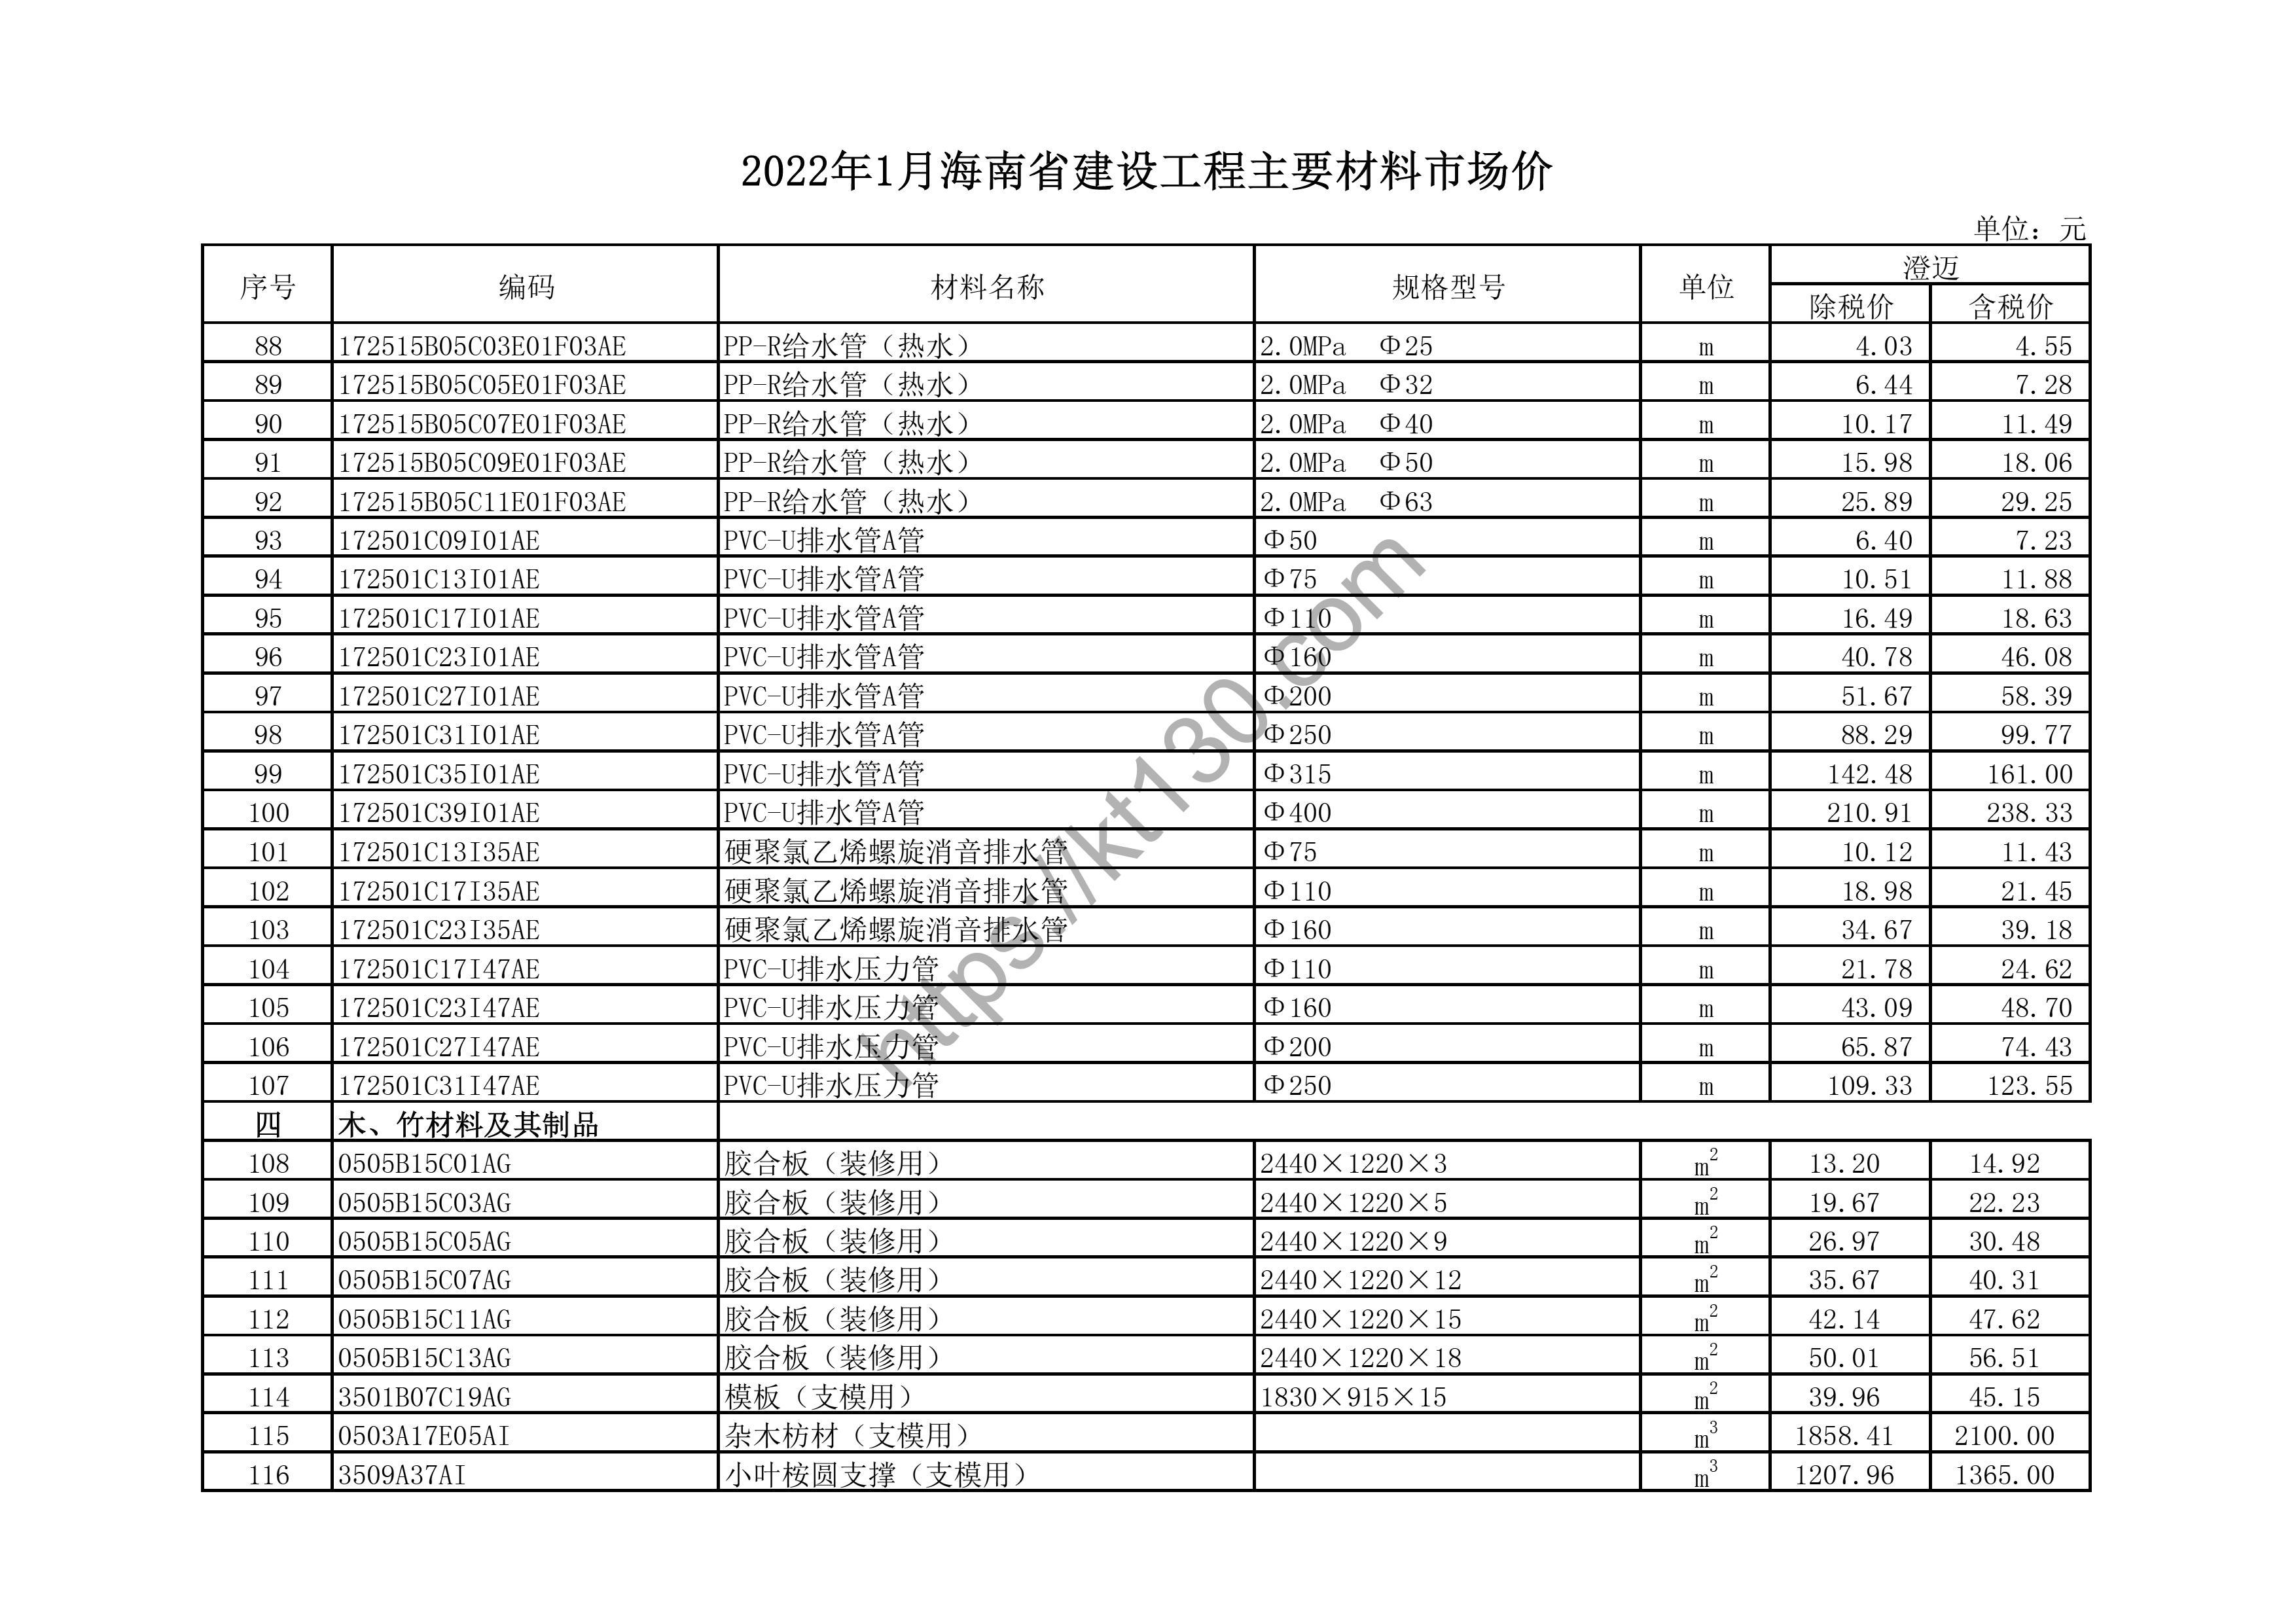 海南省2022年1月建筑材料价_排水管A管_43673